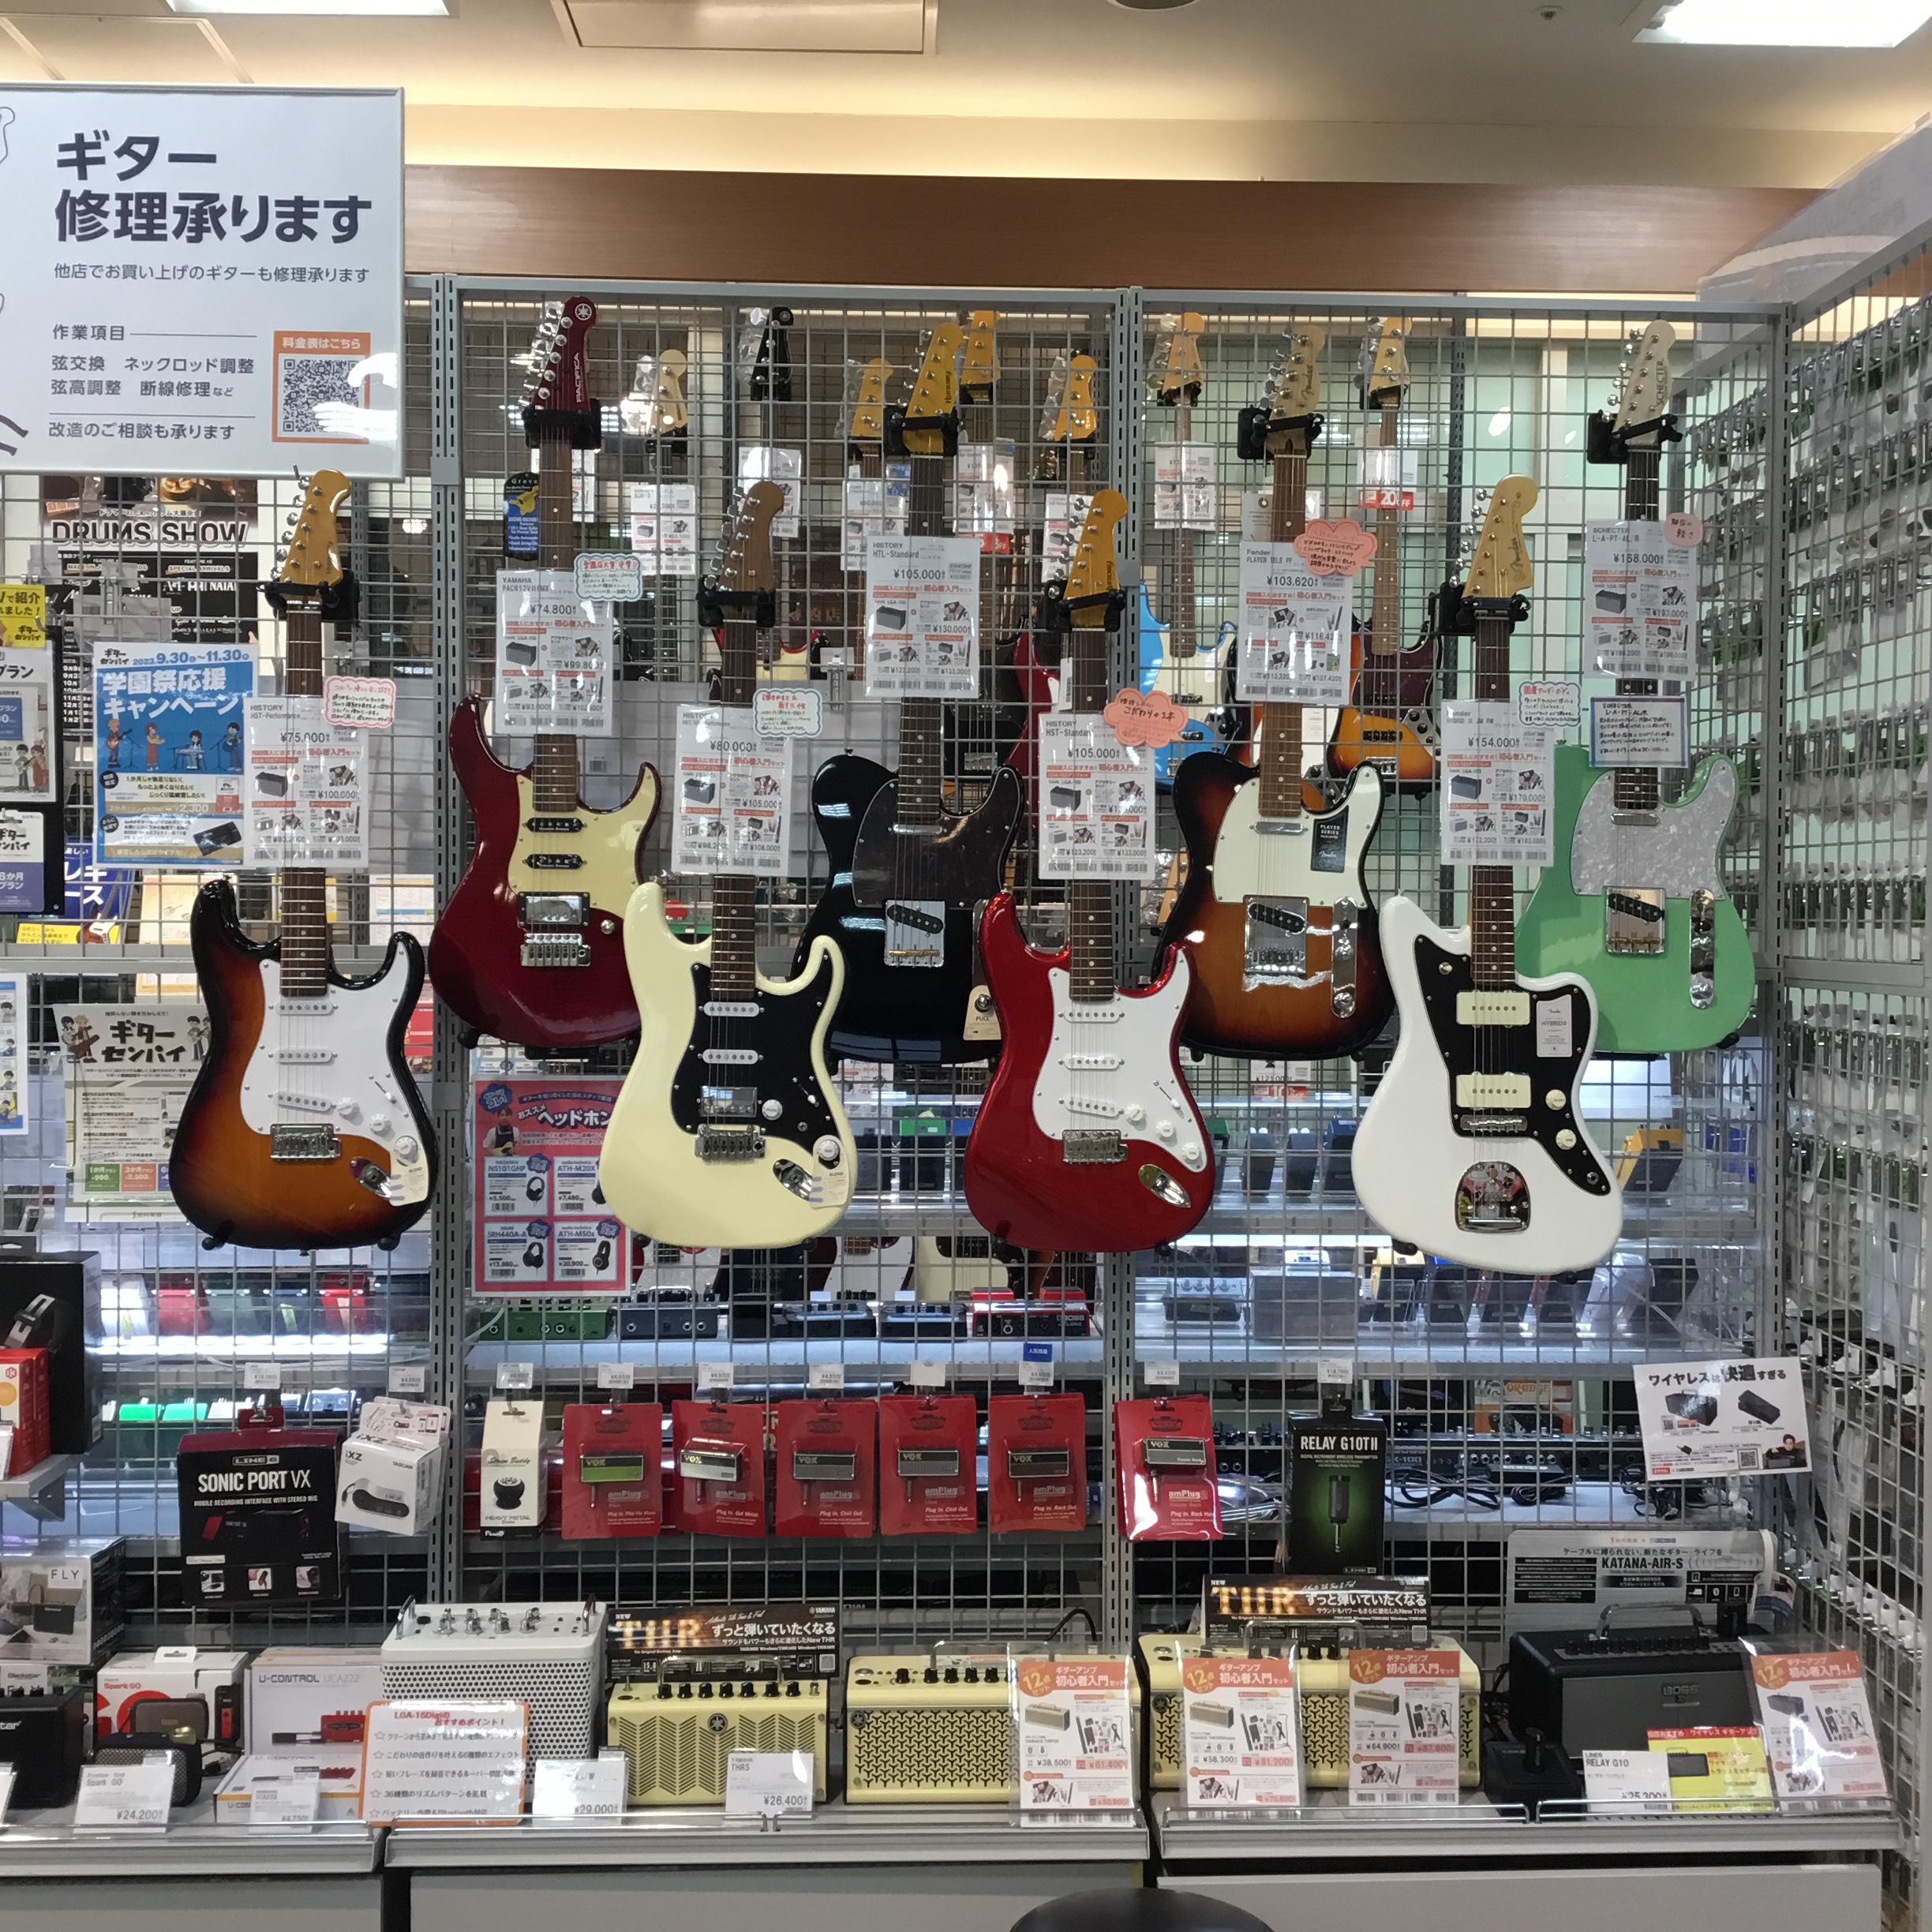 こんにちは！島村楽器仙台泉パークタウンタピオ店スタッフの小野です。当店では、エレキギターコーナーにスタッフおすすめギターの展示をしています！特にビギナーのギタリストに弾きやすいモデルを展示していますので、今回はそちらをご紹介いたします。